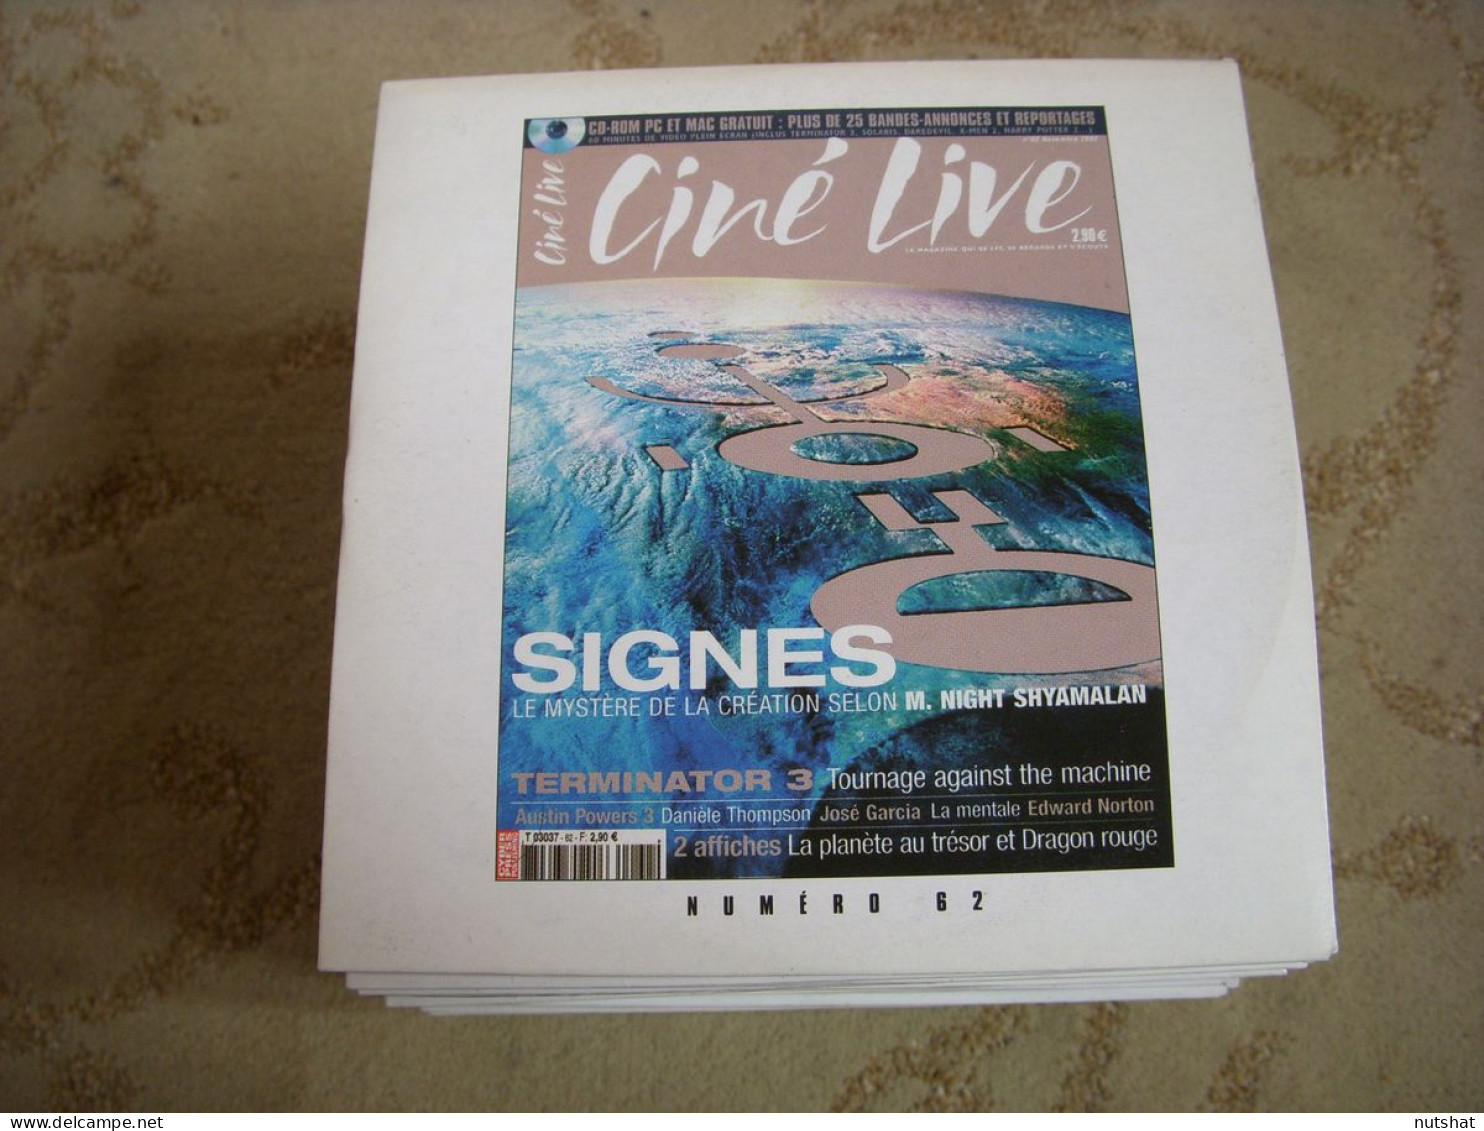 CD PROMO BANDES ANNONCES FILM CINE LIVE 62 11.2002 SIGNES TERMINATOR 2 GREASE - Sonstige Formate